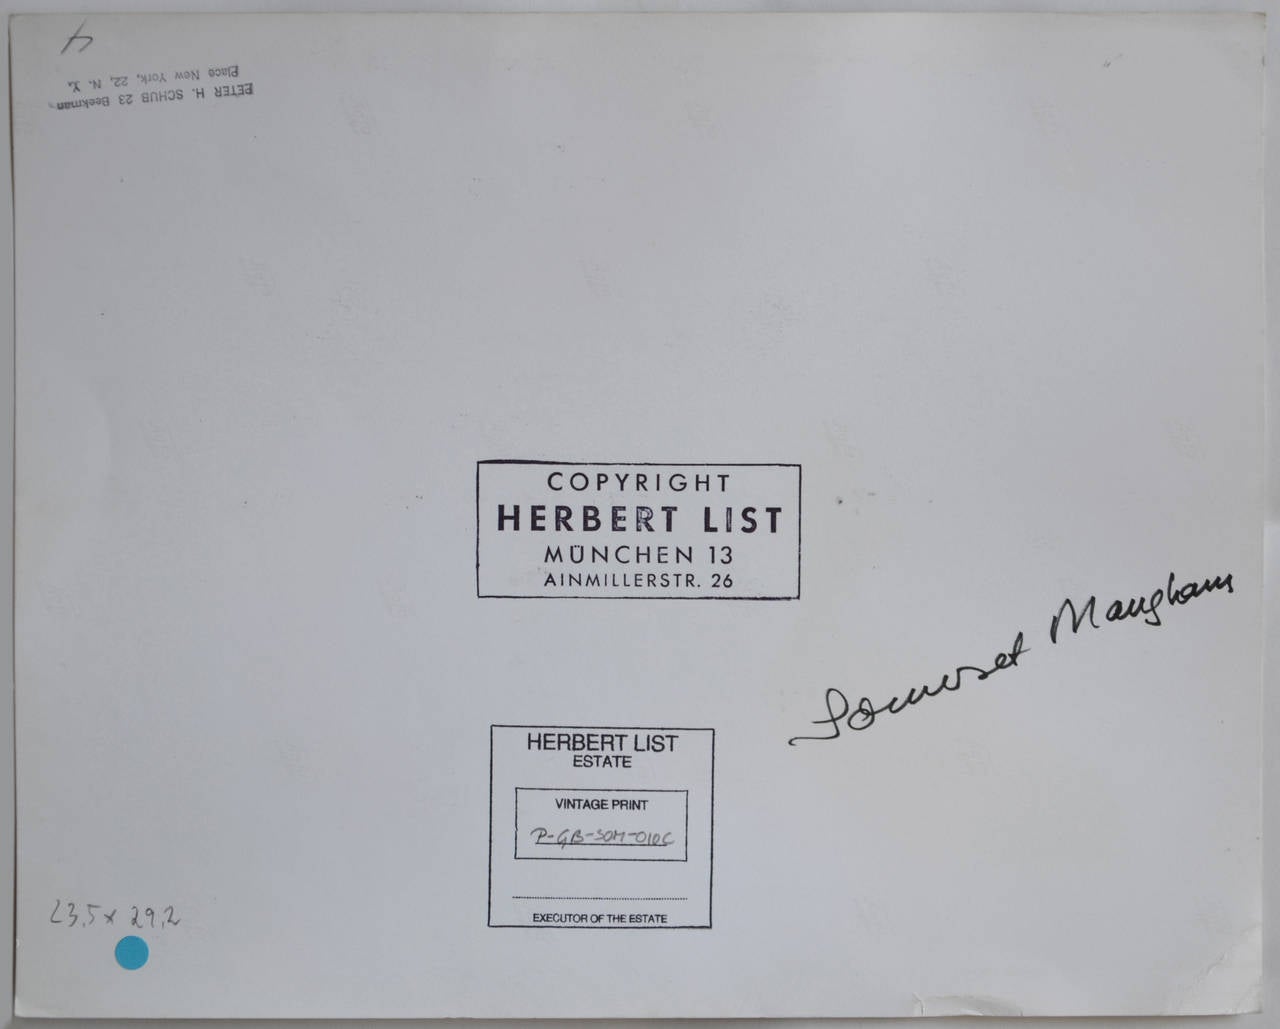 Somerset Maugham - Photograph by Herbert List